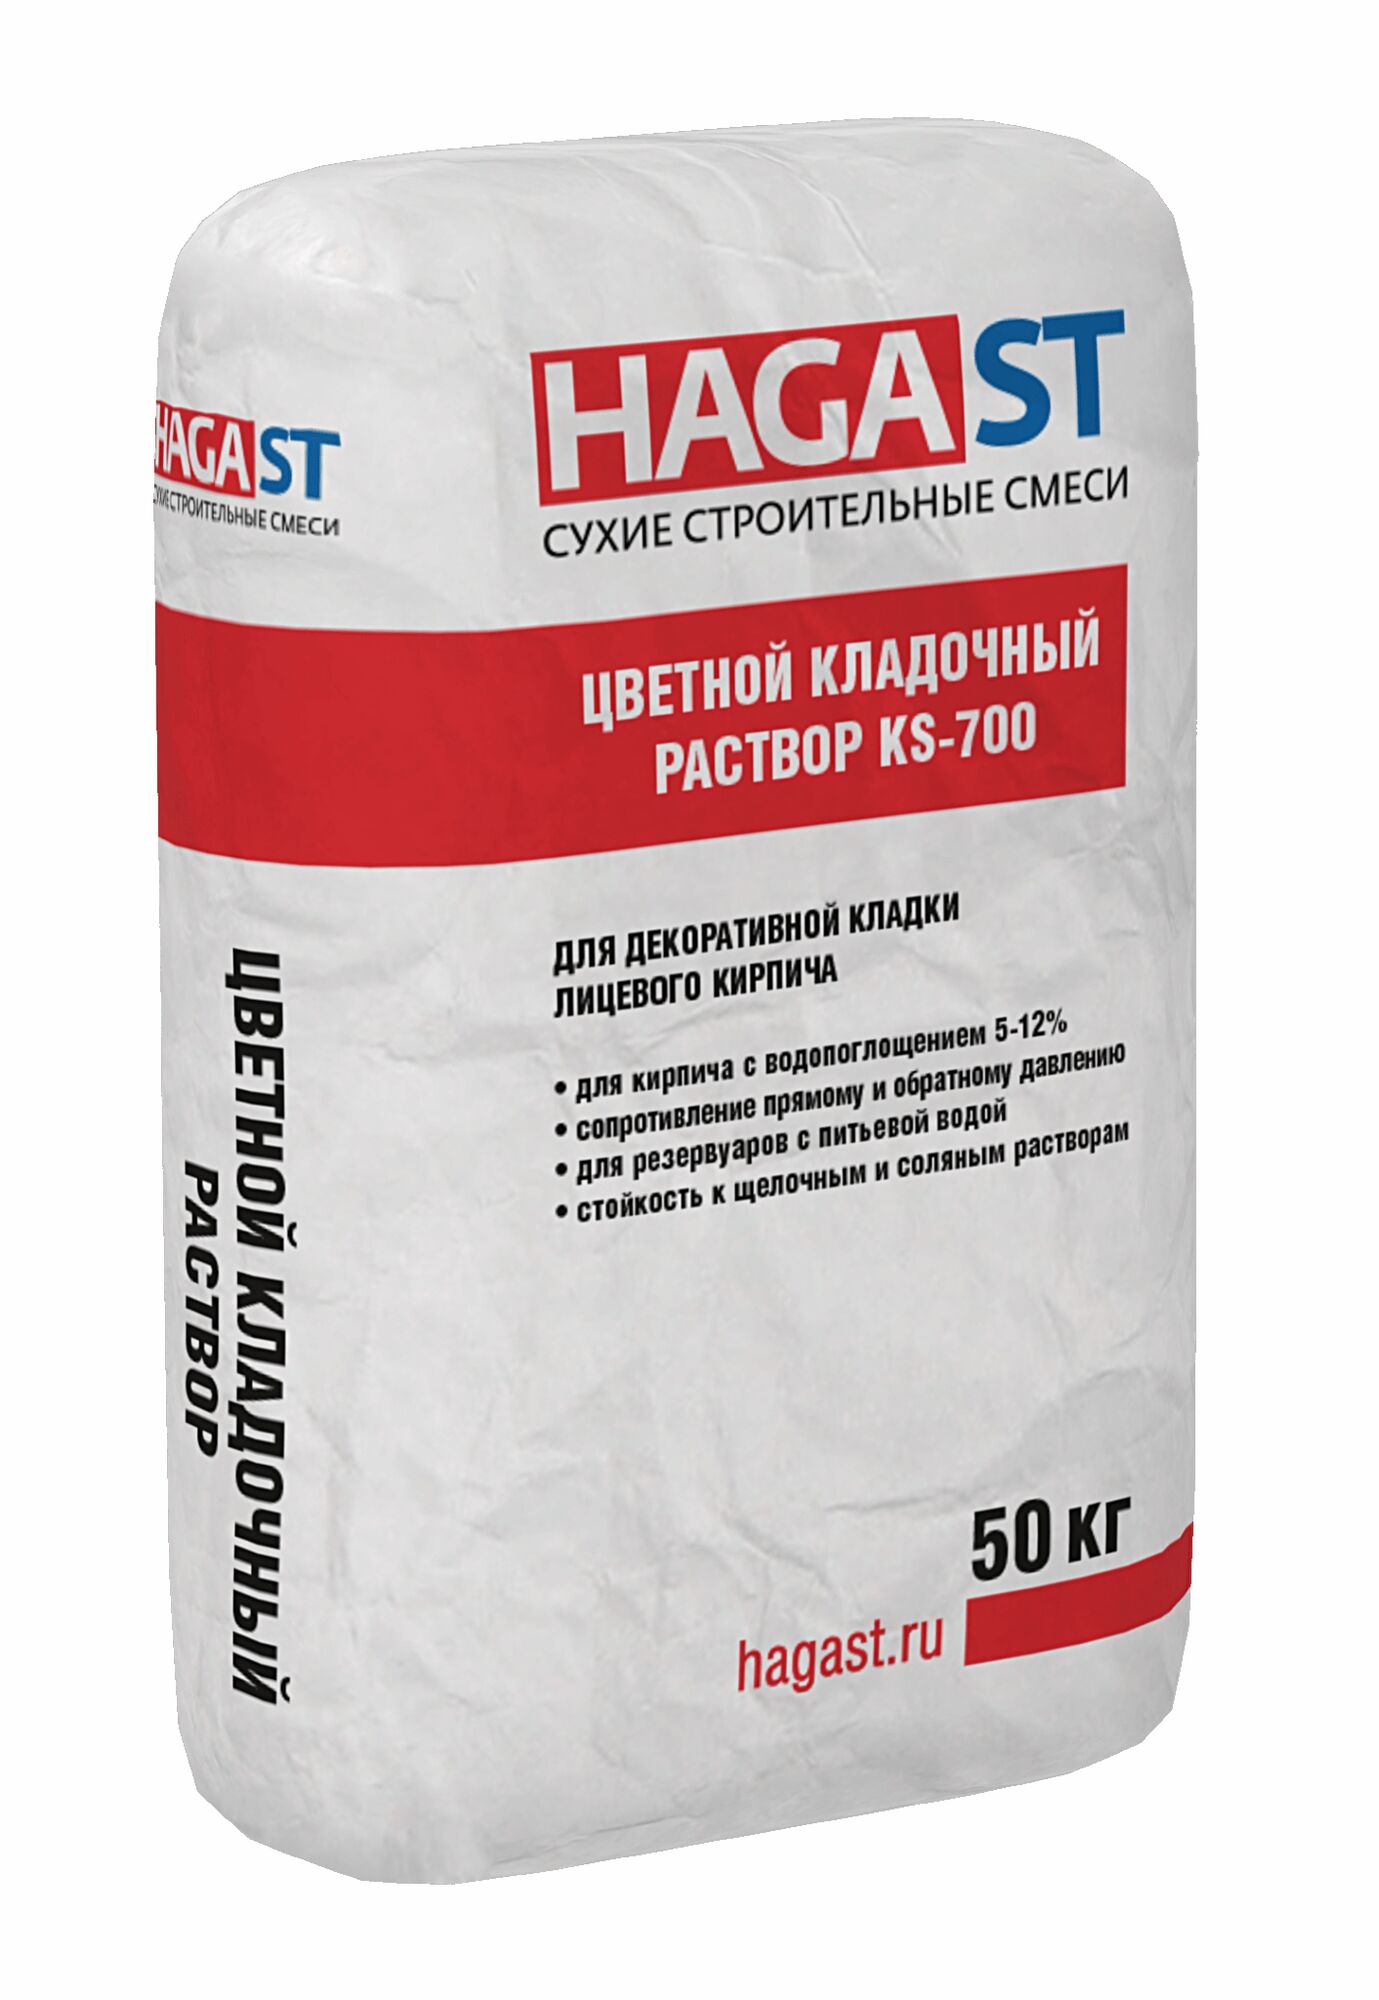 HagaST KS 701 белый, 50 кг, кладочная смесь (кирпич 5-12%)